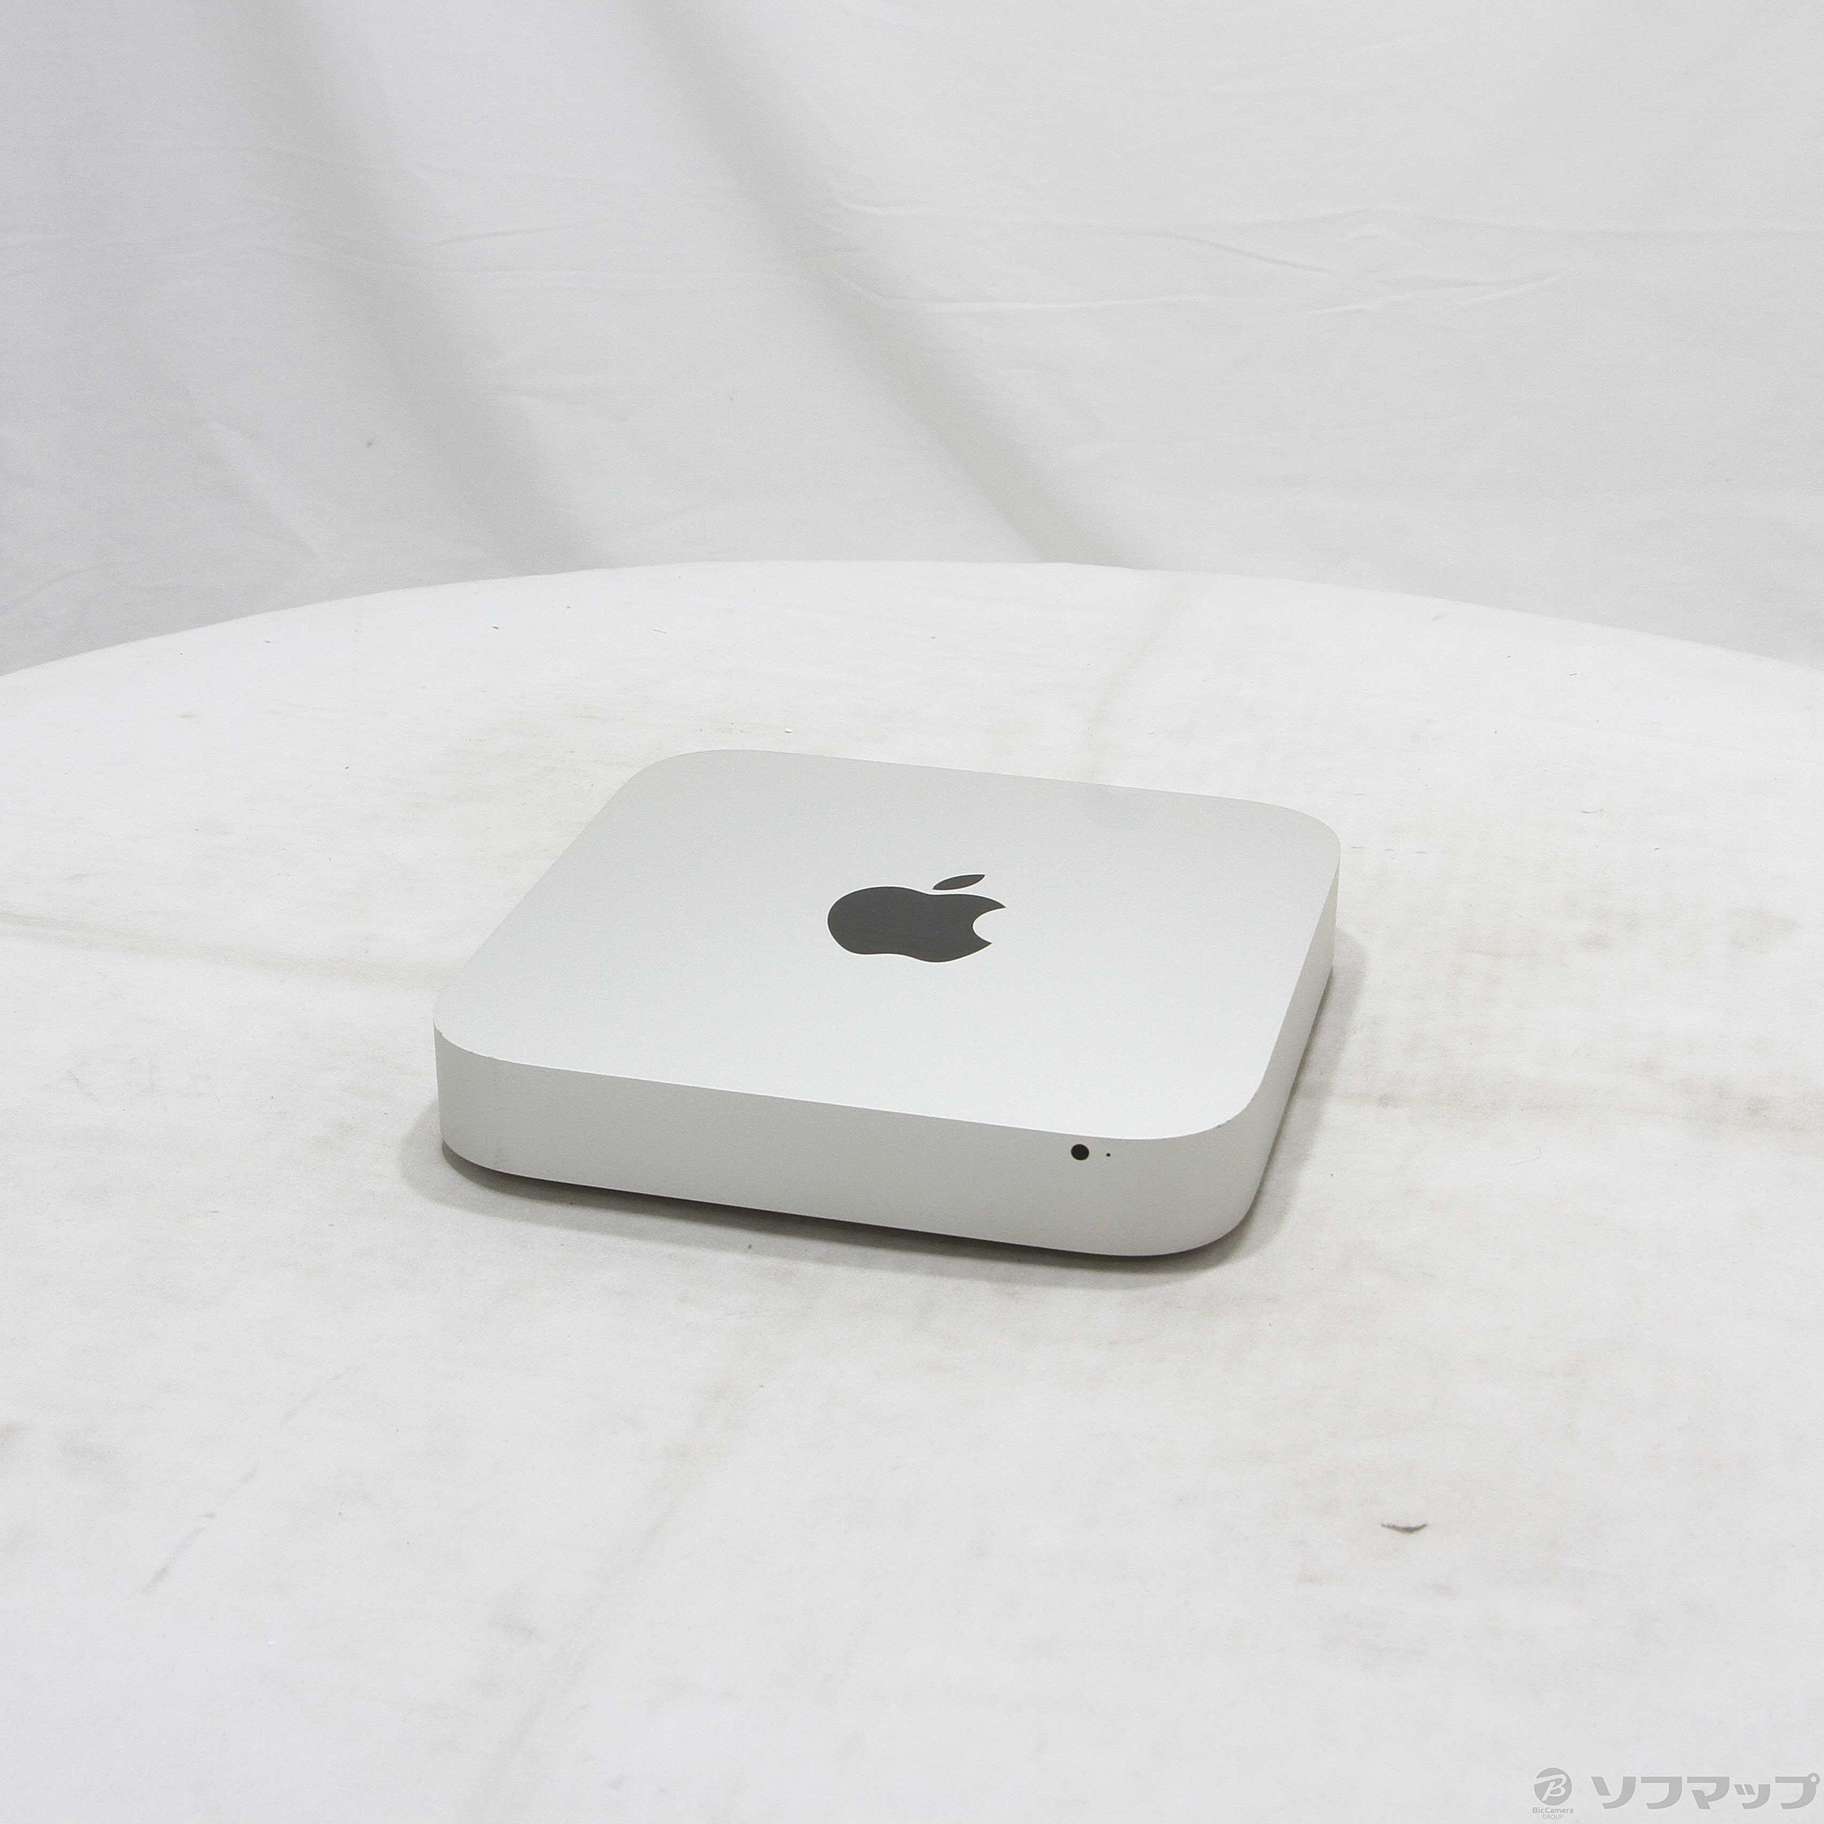 Apple Mac mini MD388J/A Core i7 メモリ16GB